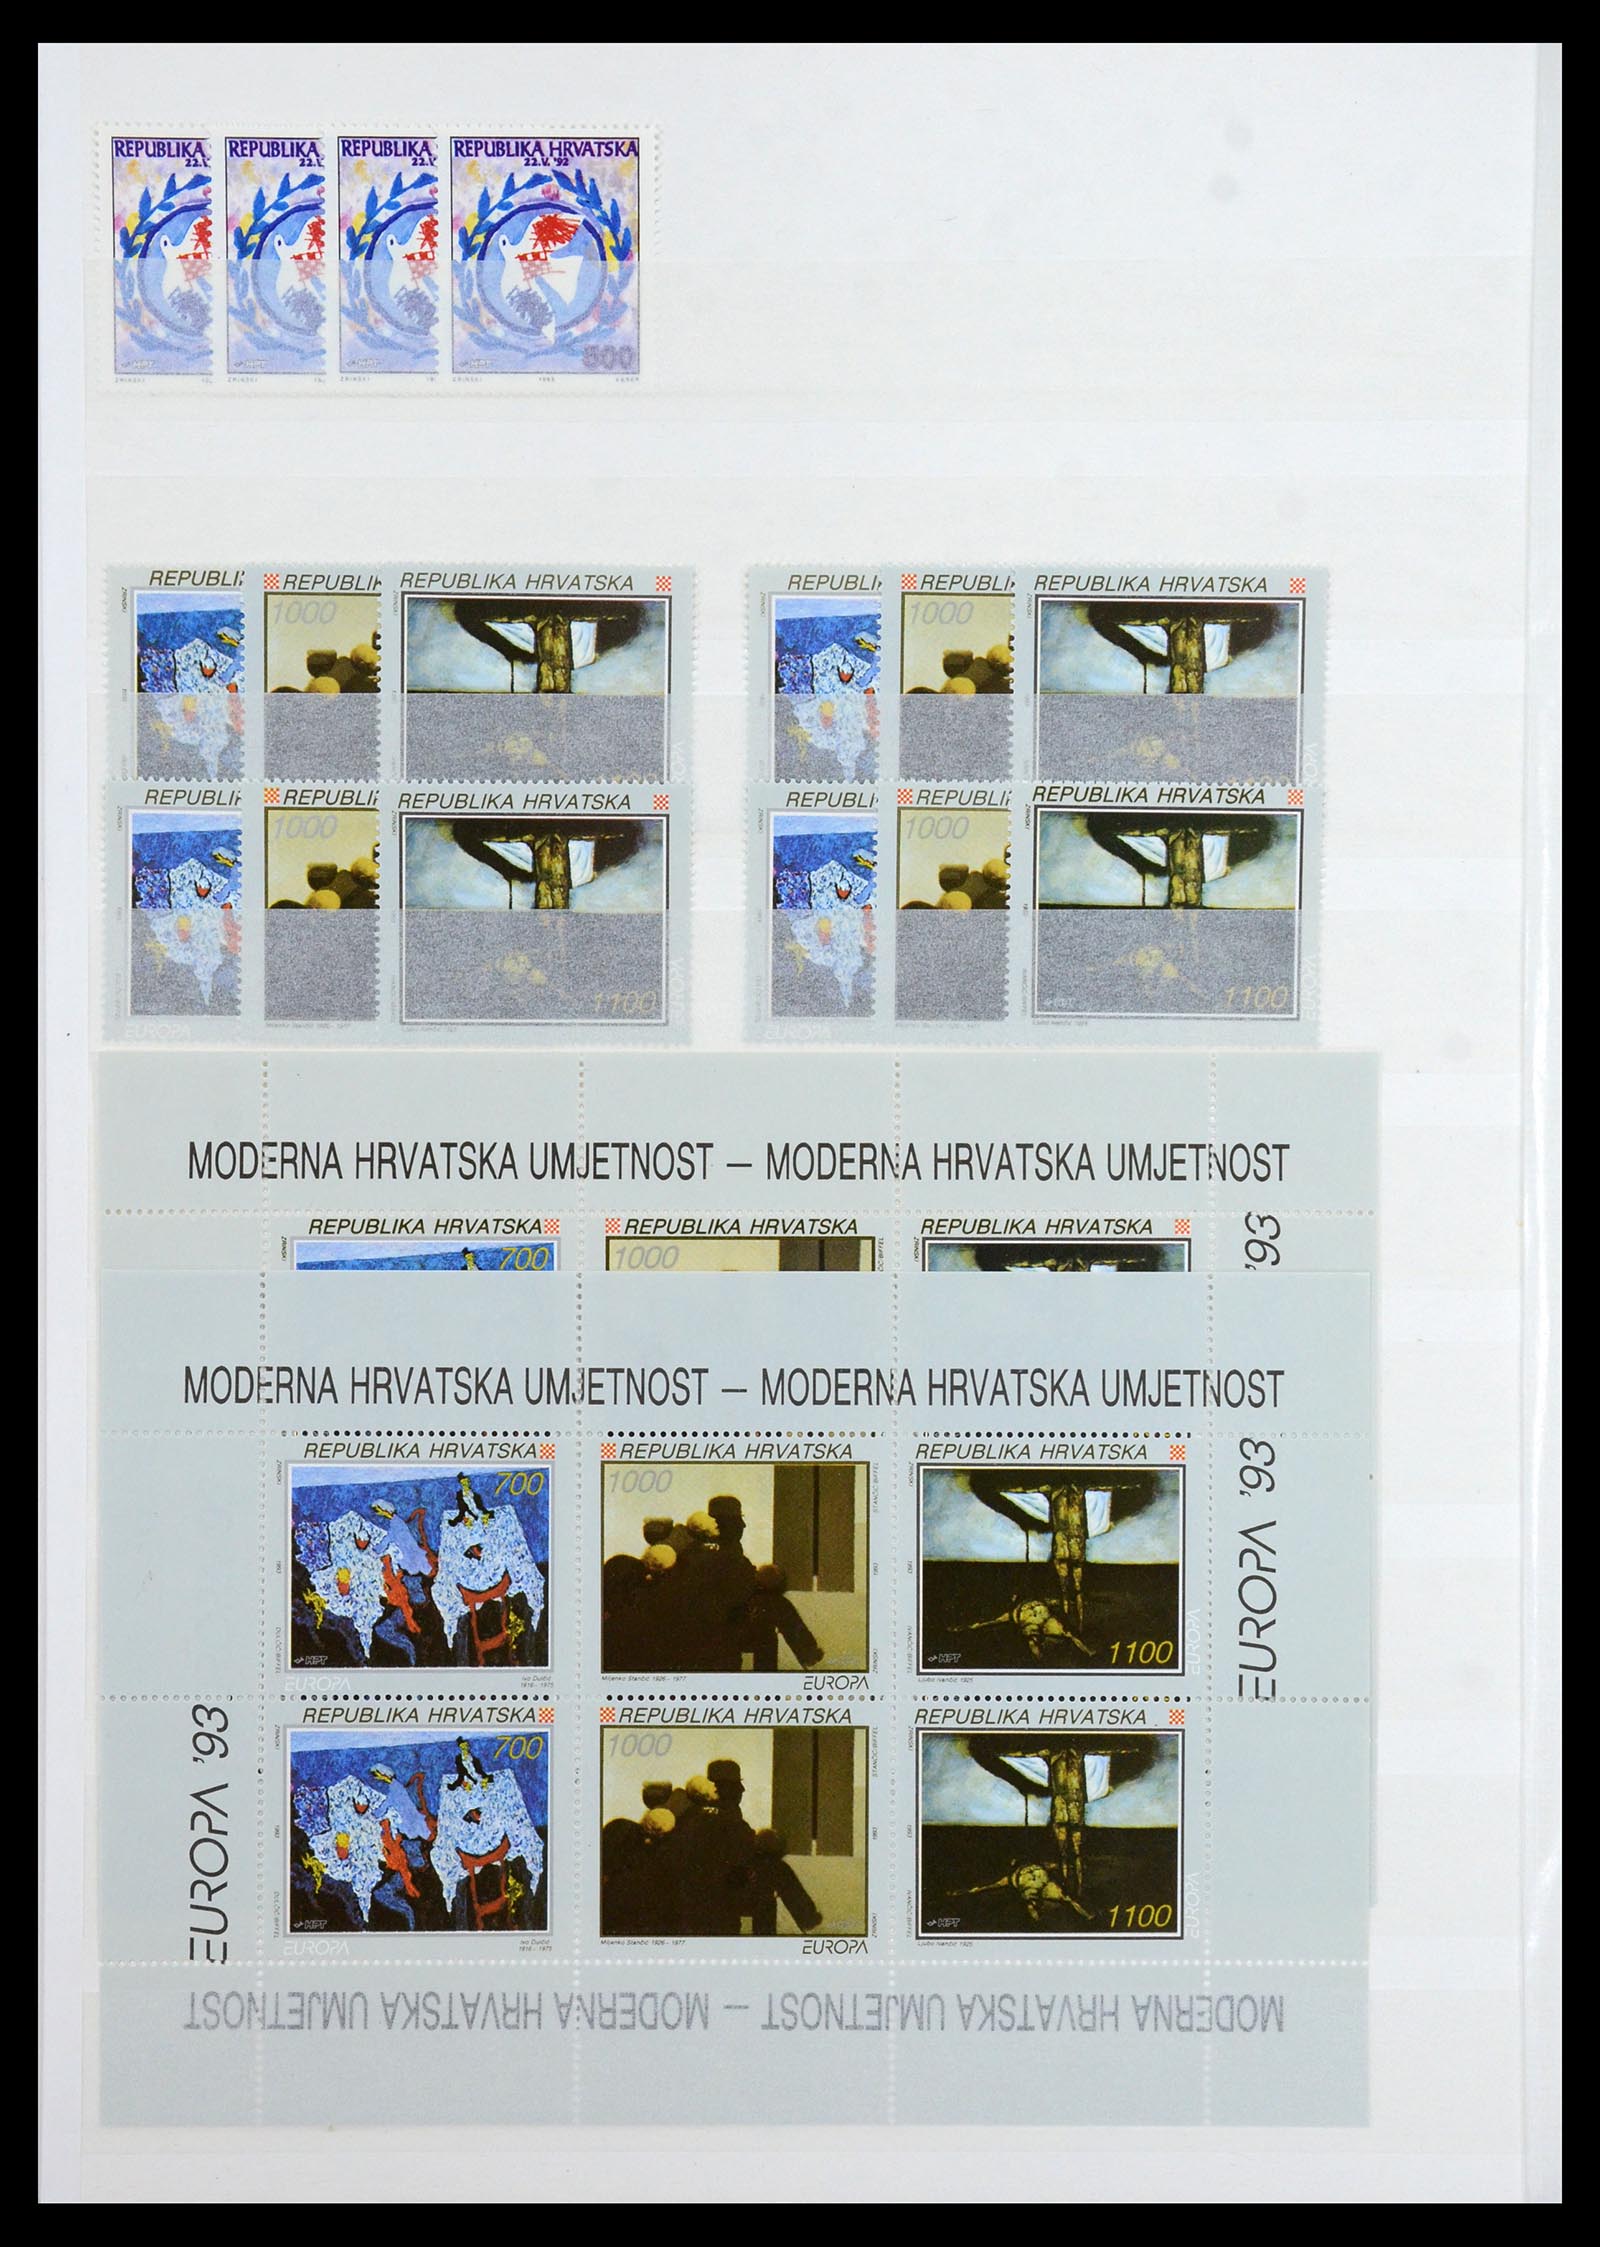 36461 032 - Stamp collection 36461 Slovenia, Croatia and Bosnia-Herzegovina MNH 1991